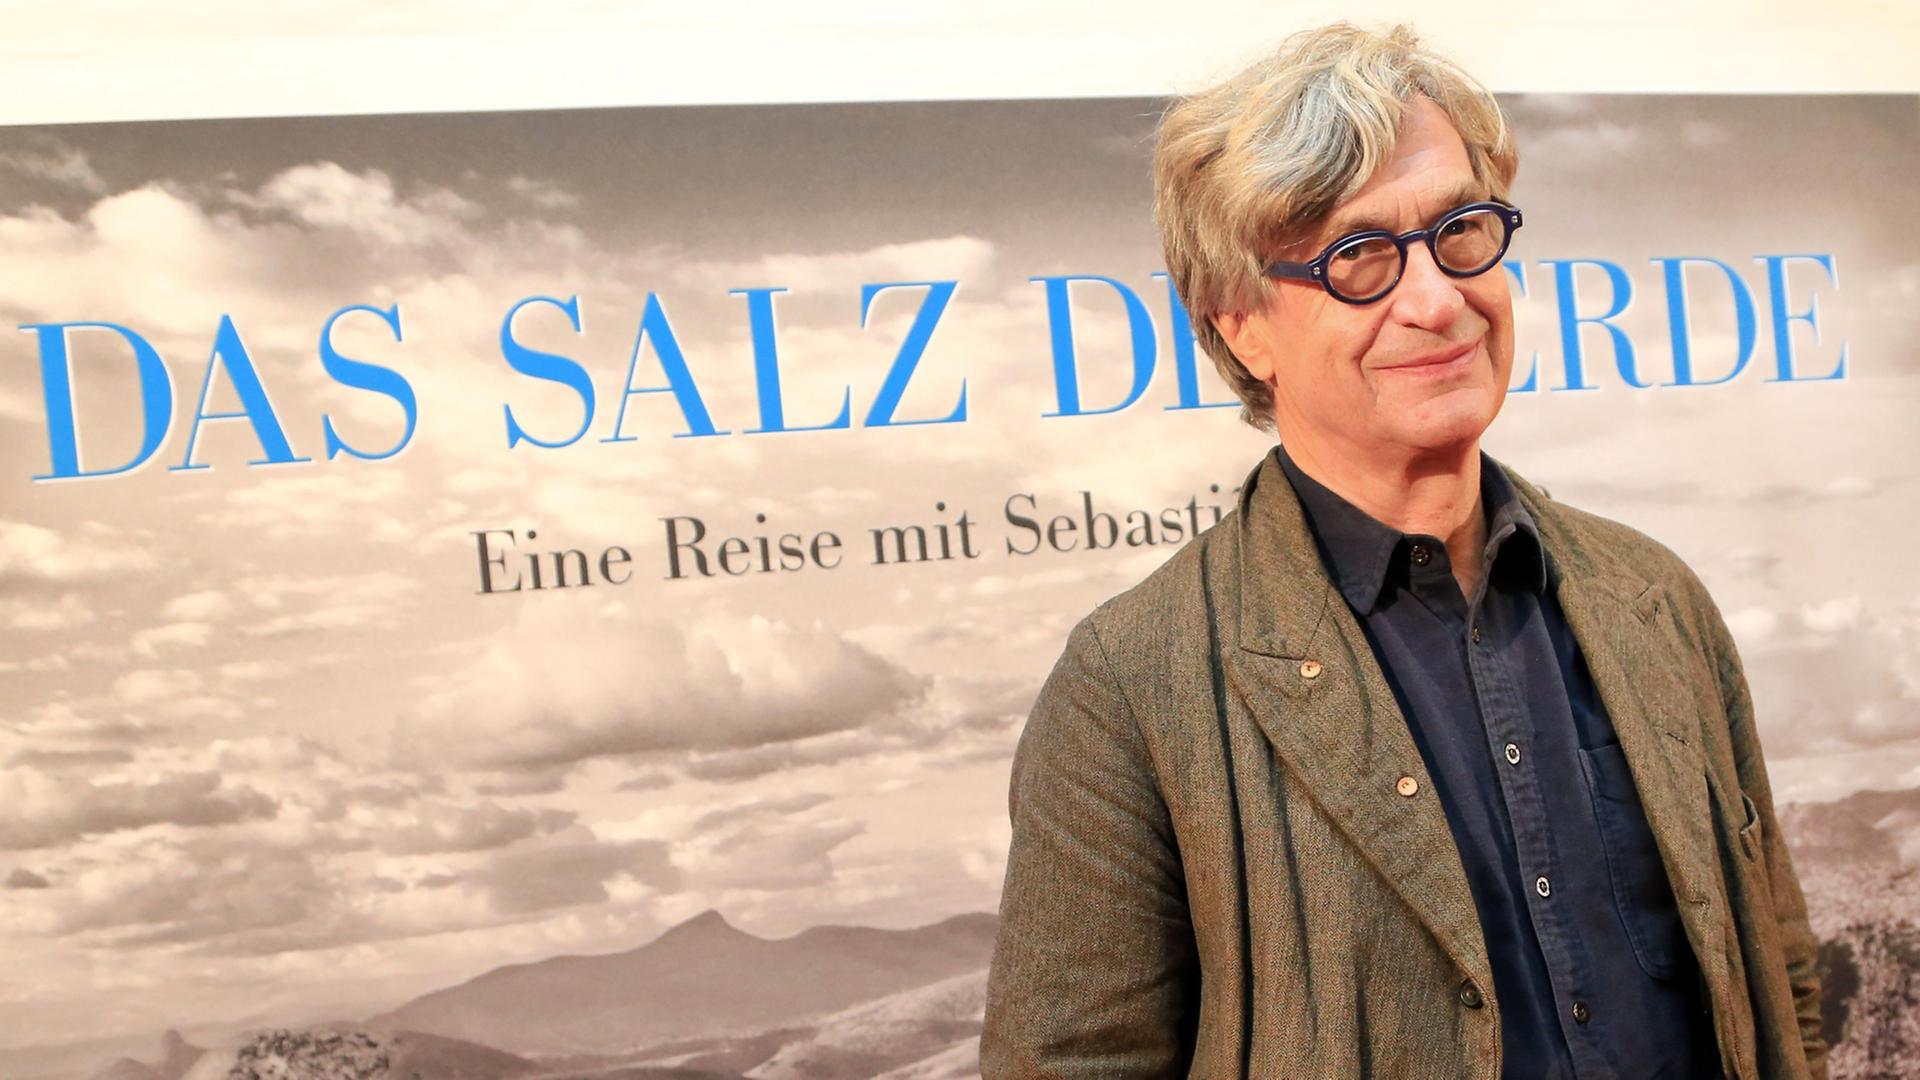 Wim Wenders steht bei der Premiere des Films "Das Salz der Erde" in der Lichtburg in Essen.